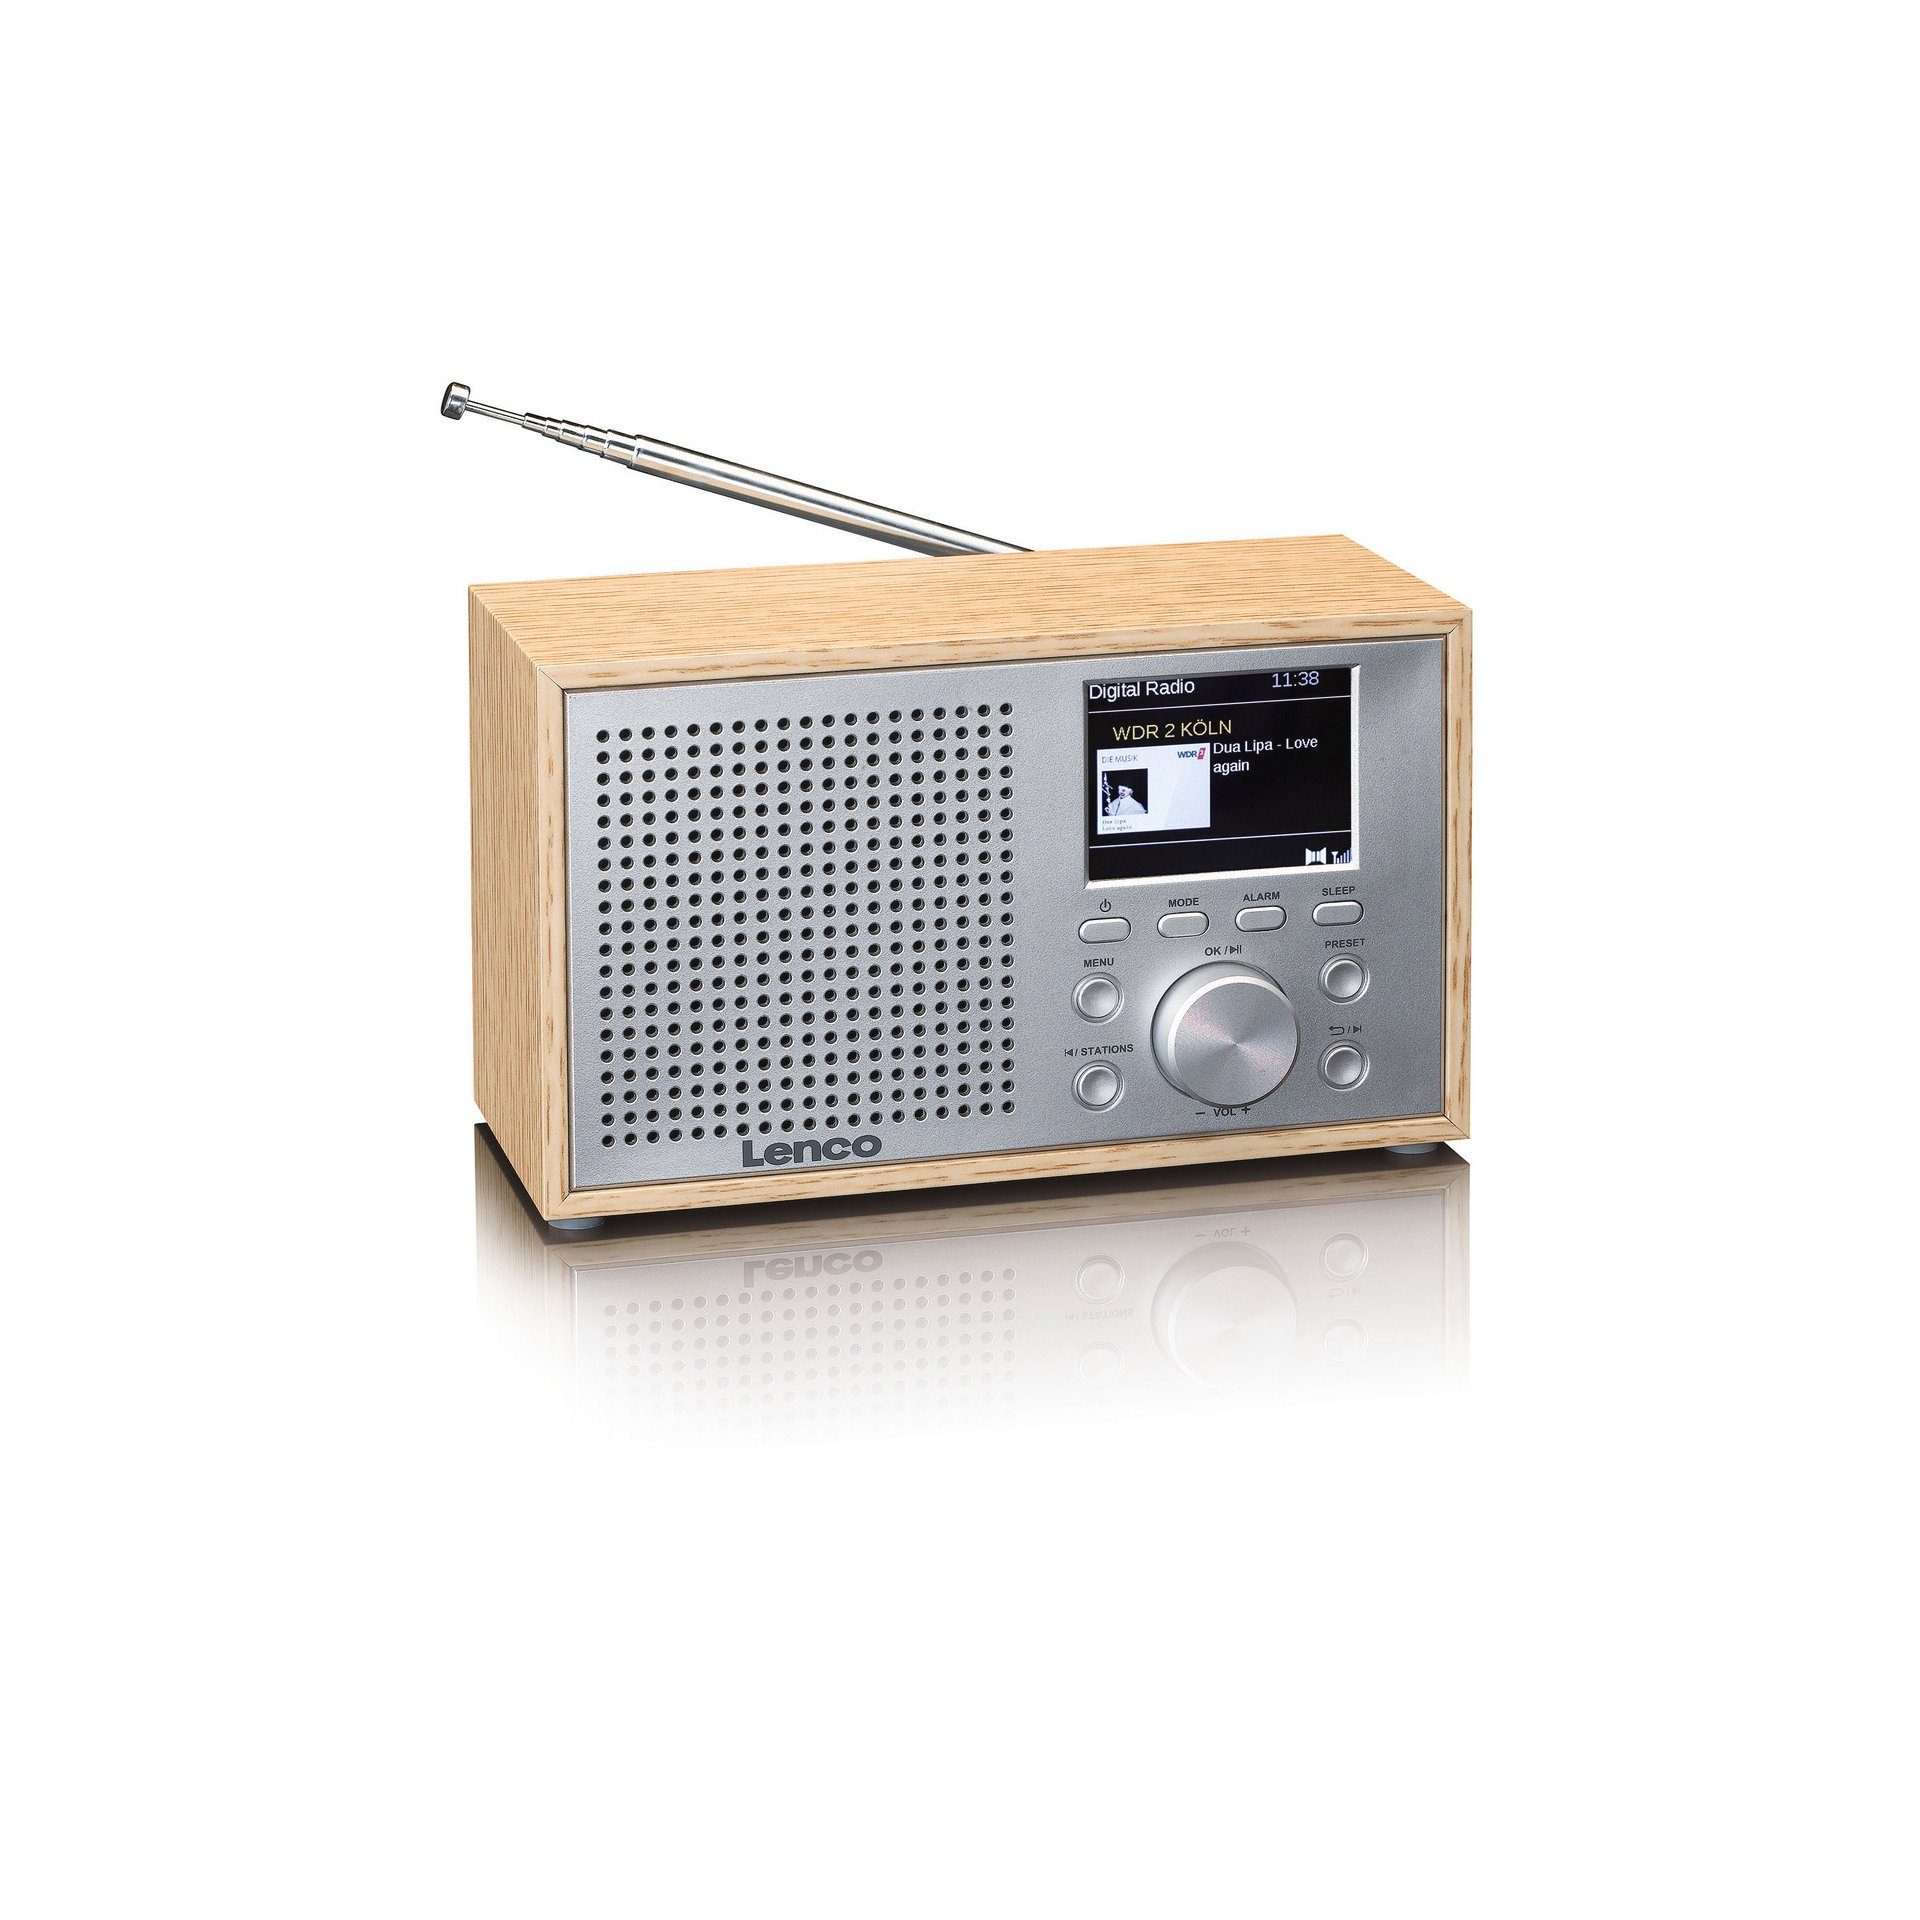 (DAB) Radio Digitalradio DAB+/FM DAR-017 (Digitalradio Lenco W) mit 3 (DAB), Hellbraun;Silber Bluetooth